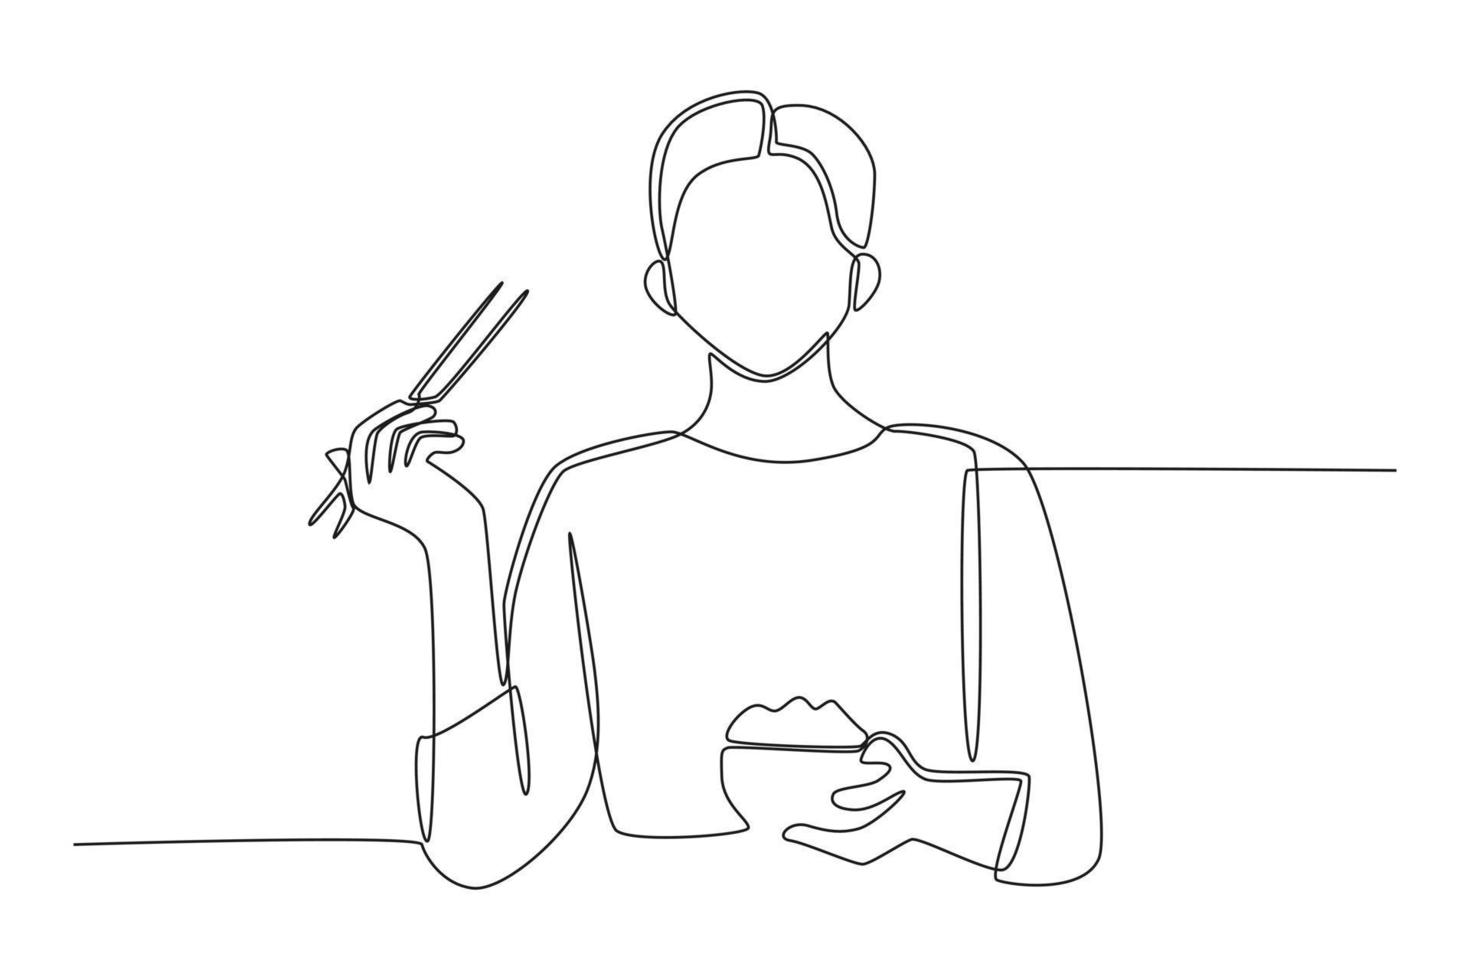 kontinuierliche eine linie, die eine asiatische frau zeichnet, die reis in einer schüssel isst, während sie seine essstäbchen hochhebt und zeigt. konzept der essensaktivität. einzeiliges zeichnen design vektorgrafik illustration. vektor